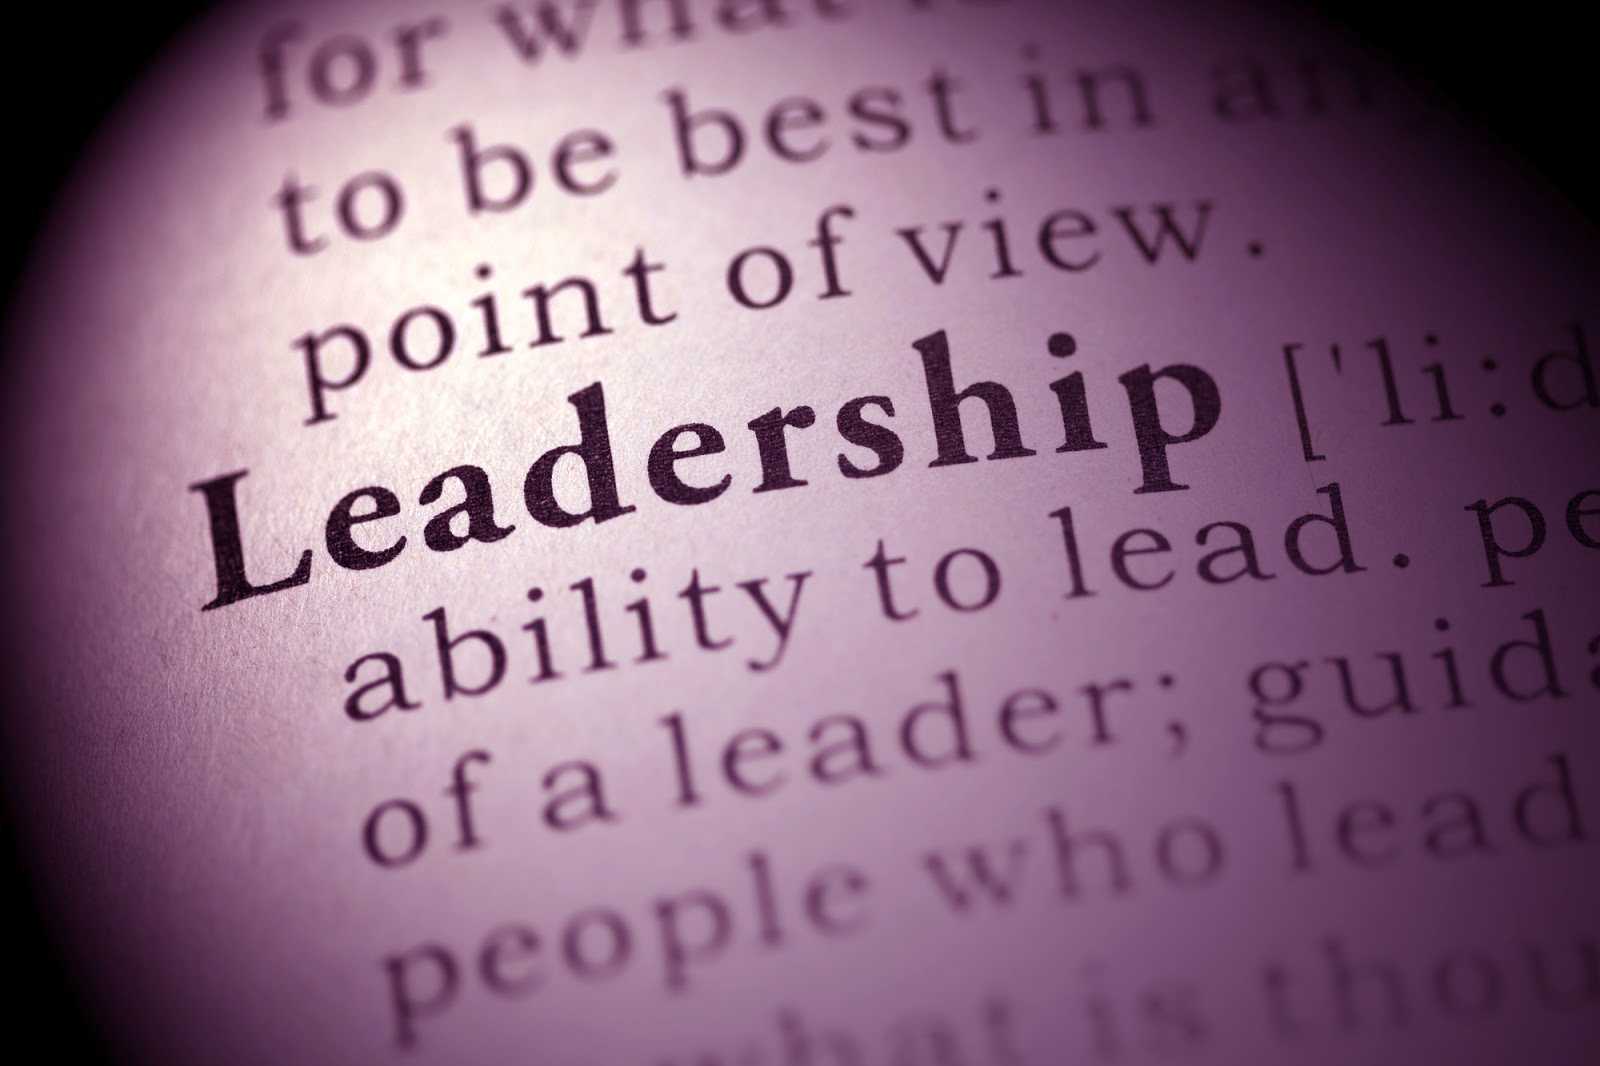 leadership studies